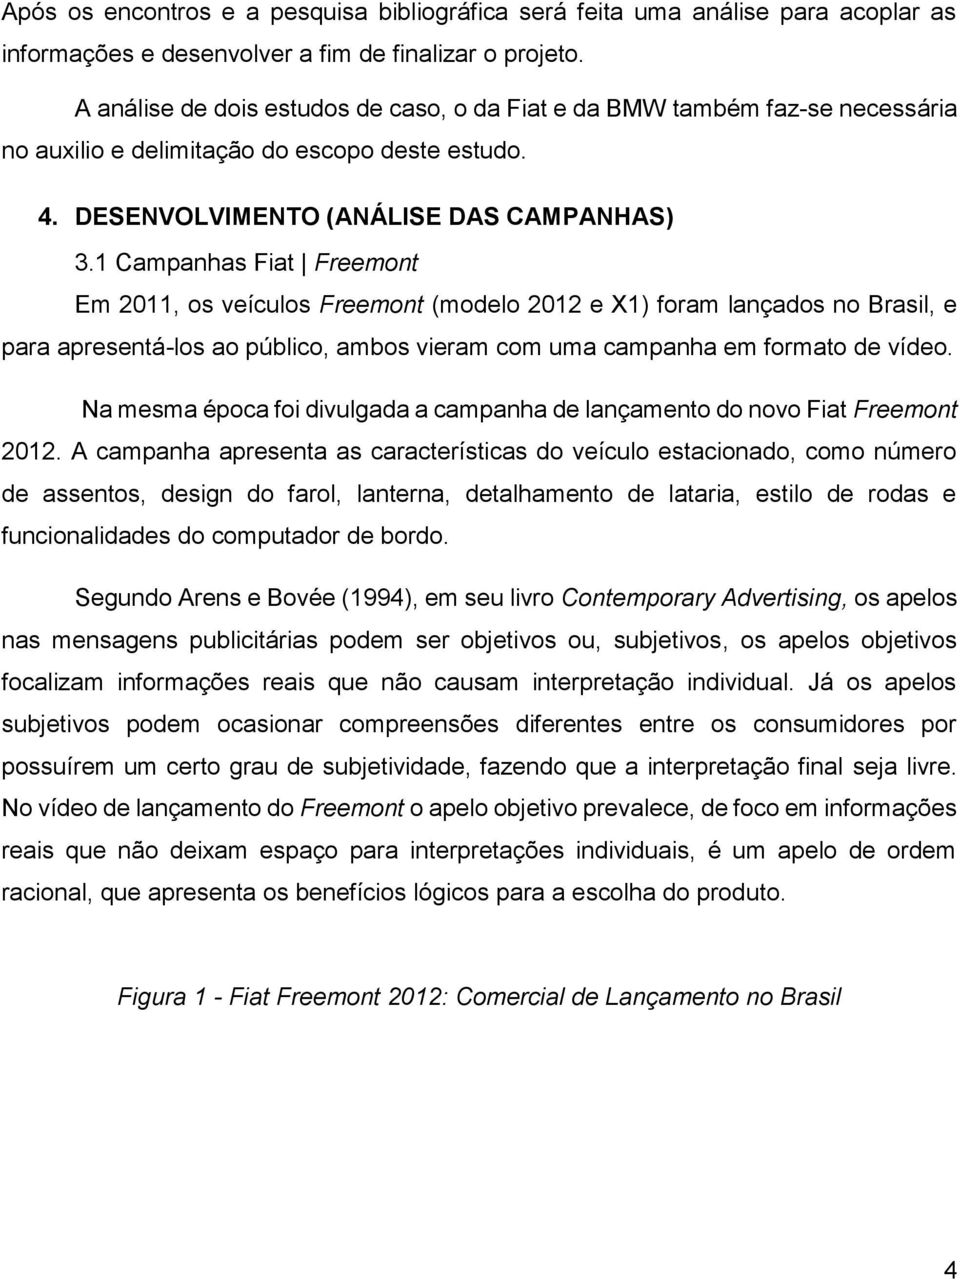 1 Campanhas Fiat Freemont Em 2011, os veículos Freemont (modelo 2012 e X1) foram lançados no Brasil, e para apresentá-los ao público, ambos vieram com uma campanha em formato de vídeo.